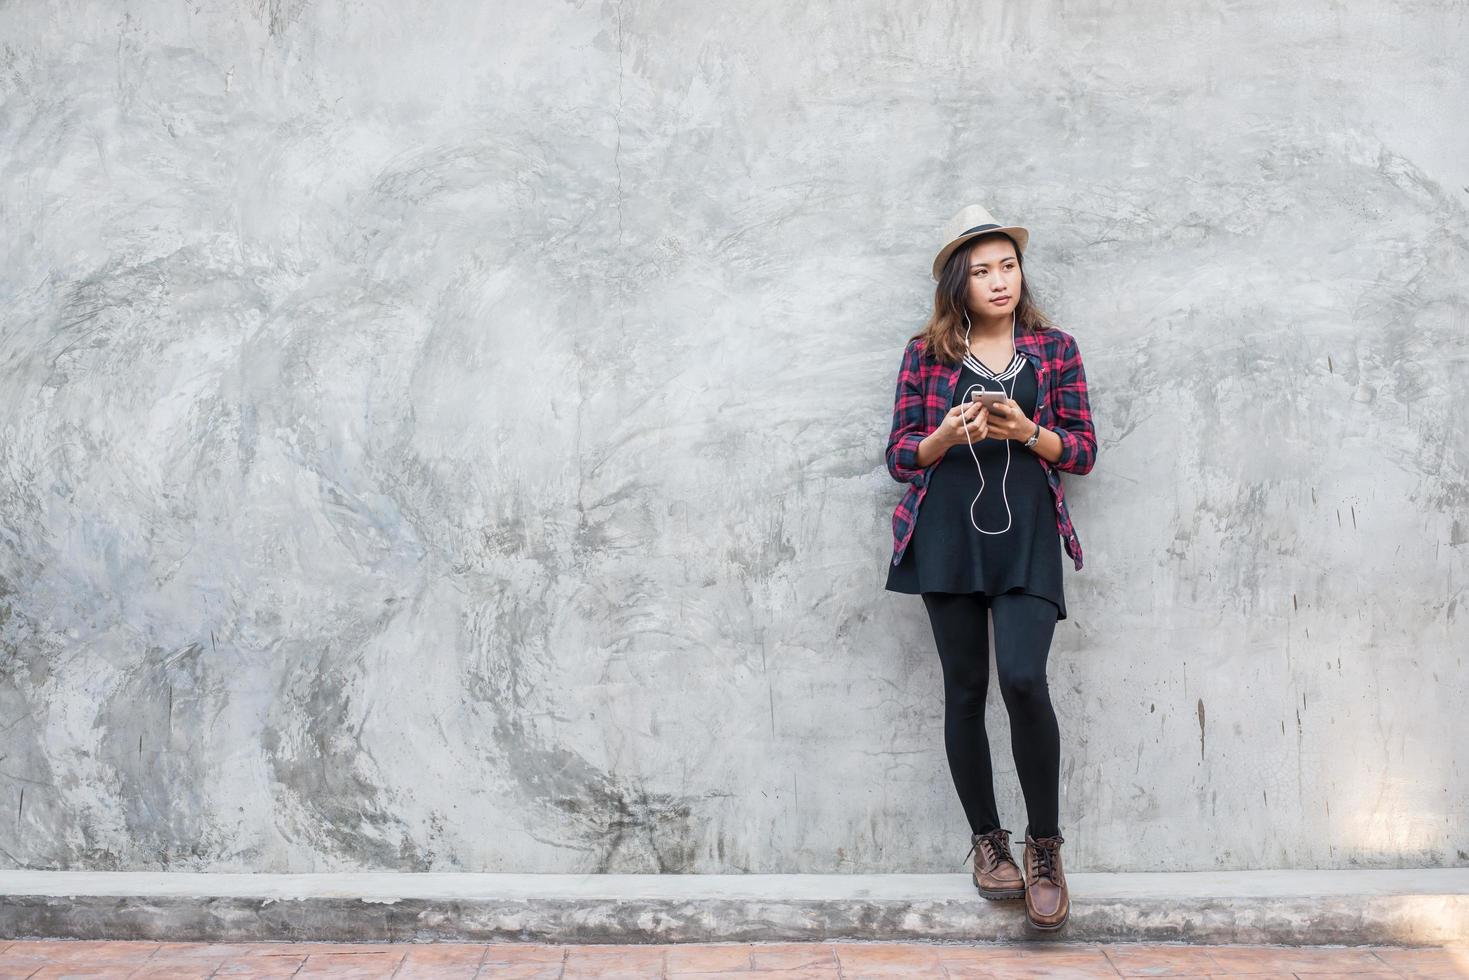 Retrato de una mujer joven inconformista escuchando música con smartphone foto